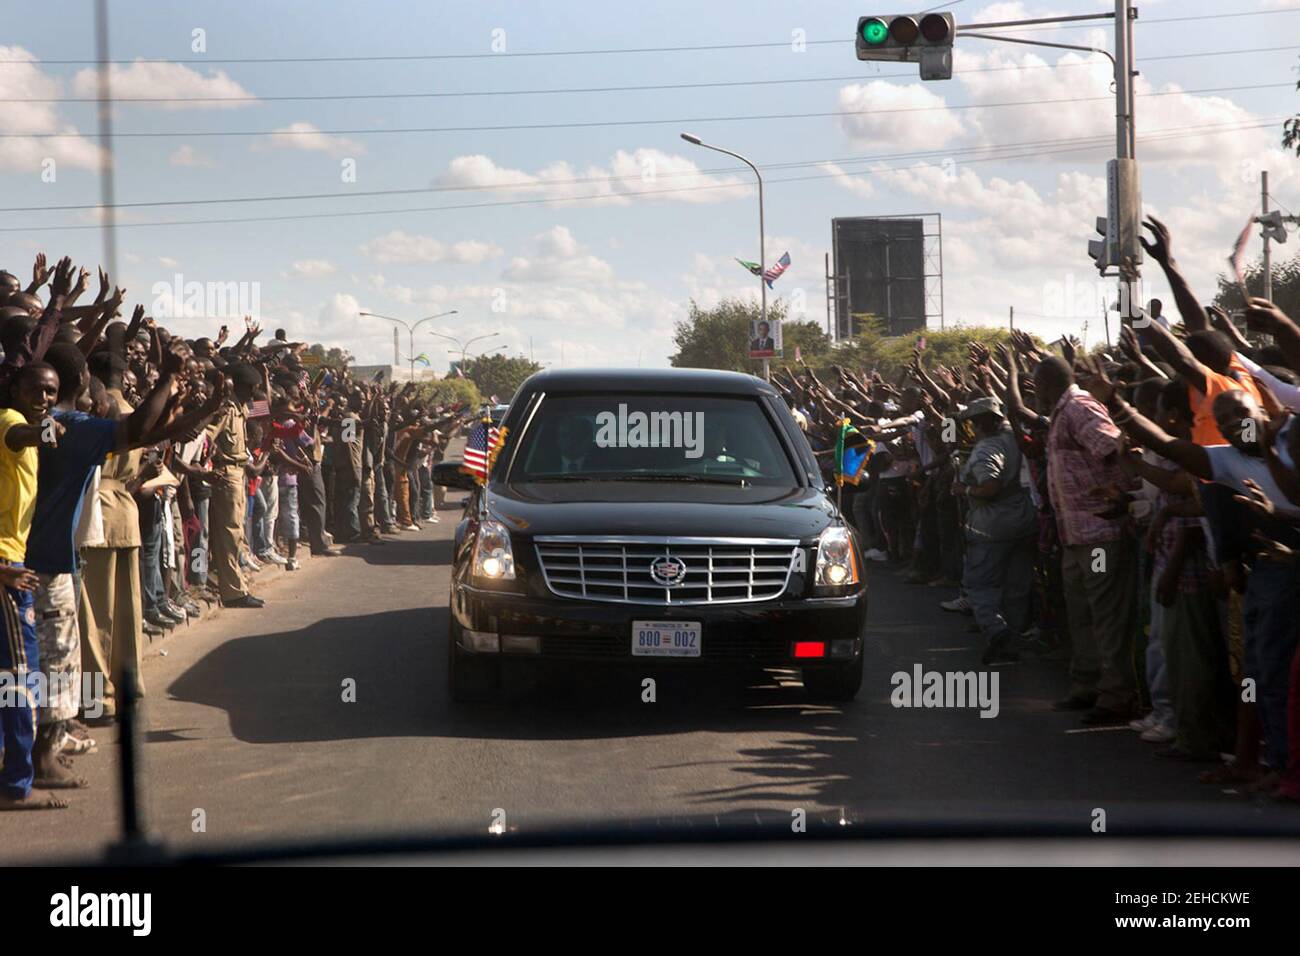 1 luglio 2013 'migliaia di persone si sono schierate per le strade mentre la motocicletta del presidente si fa strada verso la Casa di Stato di Dar es Salaam, Tanzania. Questa situazione avrebbe potuto essere pericolosa, in quanto la sicurezza locale non era in grado di tenere le persone lontano dalle automobili in accelerazione." Foto Stock